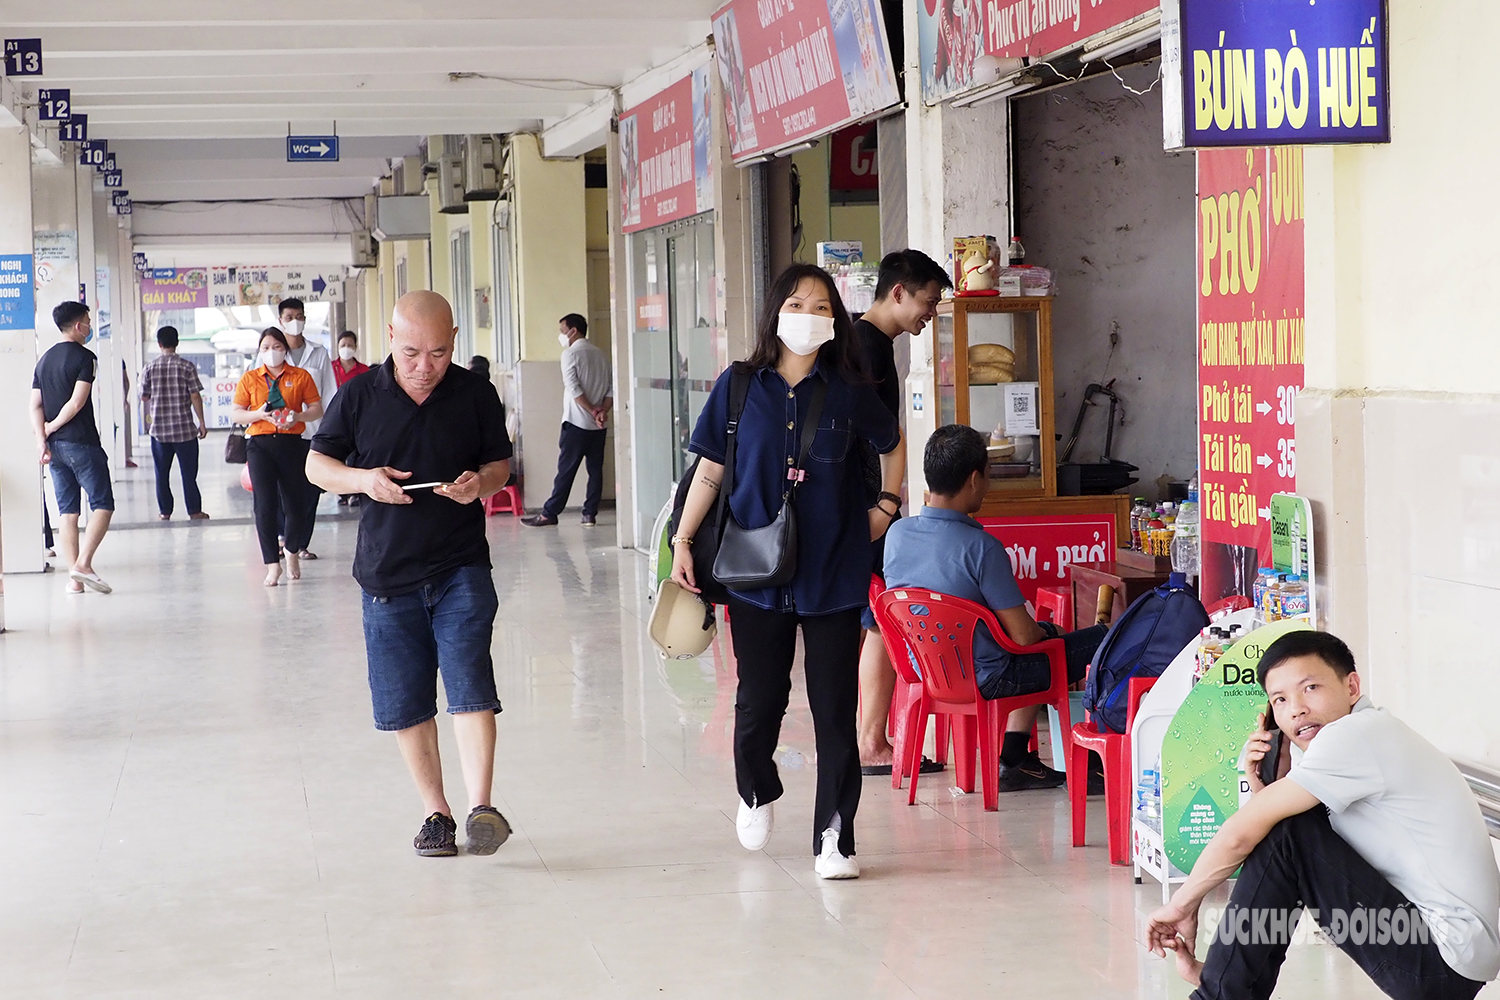 COVID-19 tại Hà Nội đang tăng từng ngày, người dân vẫn lơ là đeo khẩu trang nơi công cộng - Ảnh 2.